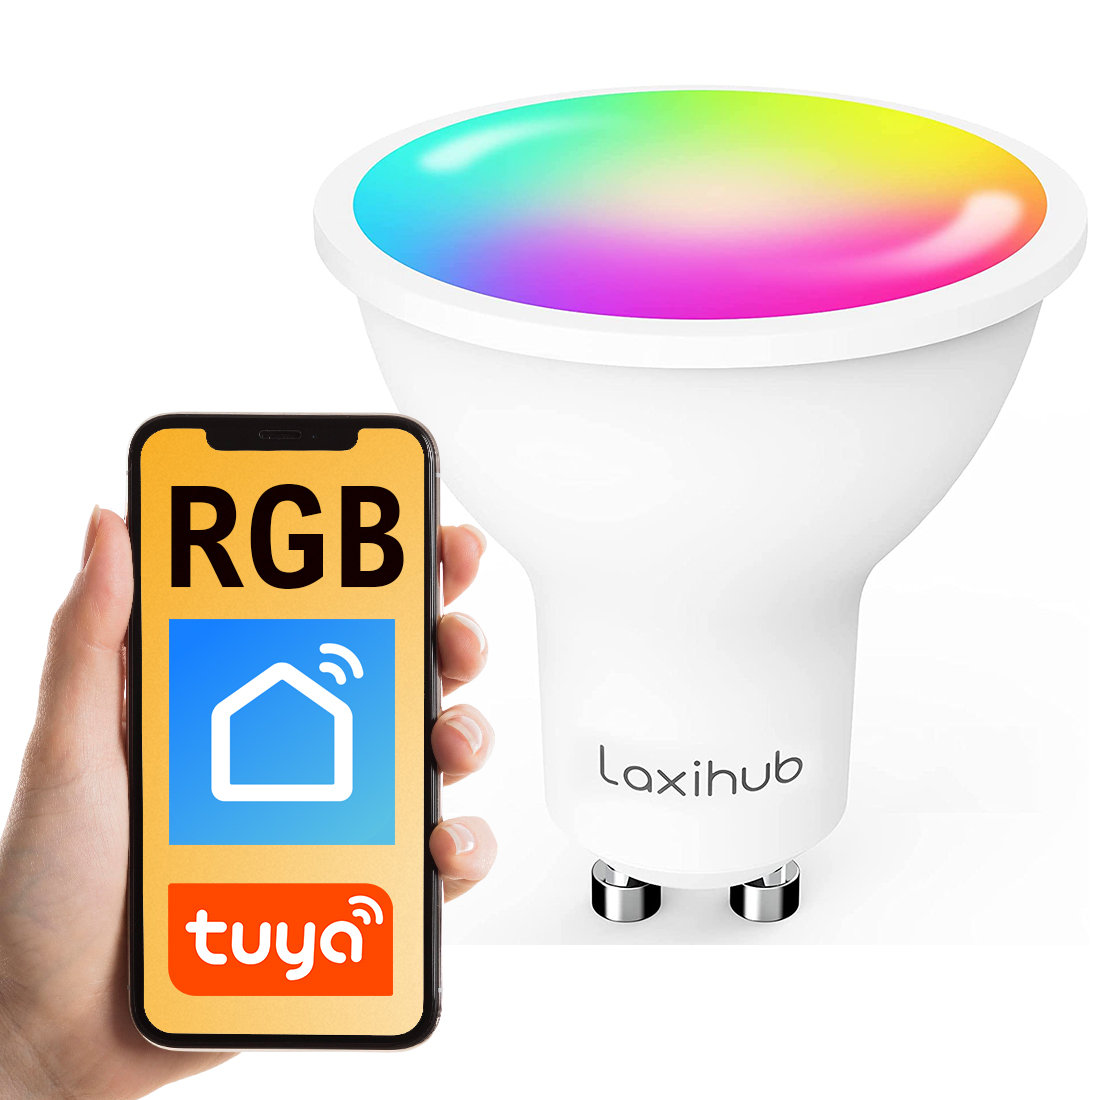 Zdjęcia - Żarówka Laxihub Inteligentna  RGB WiFi GU10 4.5W Tuya Alexa HA Smart Life 